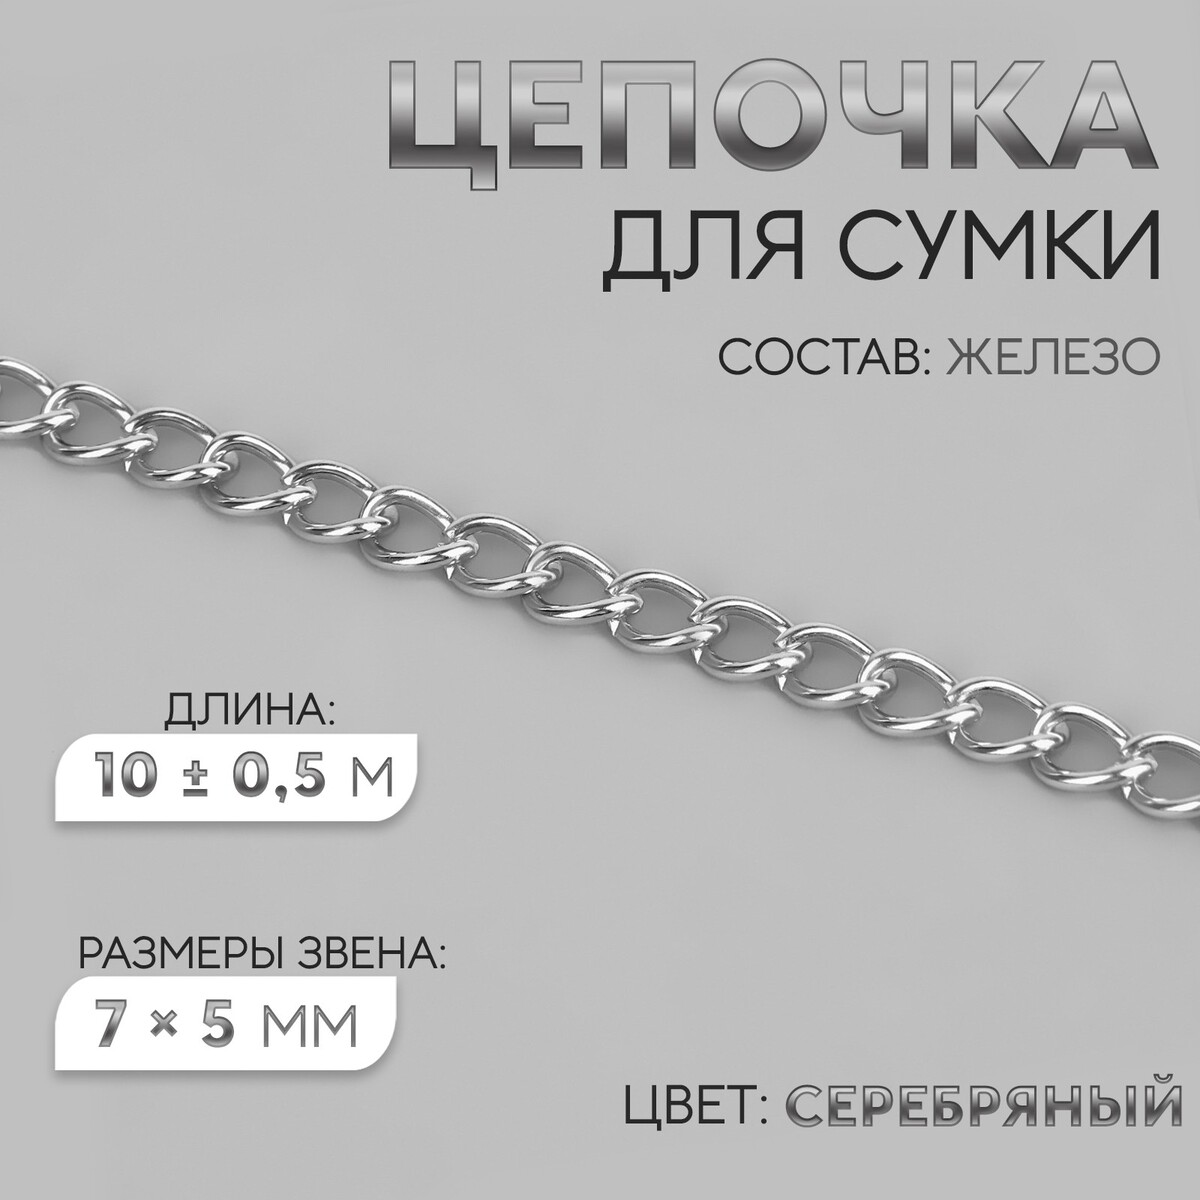 Цепочка для сумки, железная, 7 × 5 мм, 10 ± 0,5 м, цвет серебряный цепочка для сумки железная d 7 мм 10 ± 0 5 м серебряный